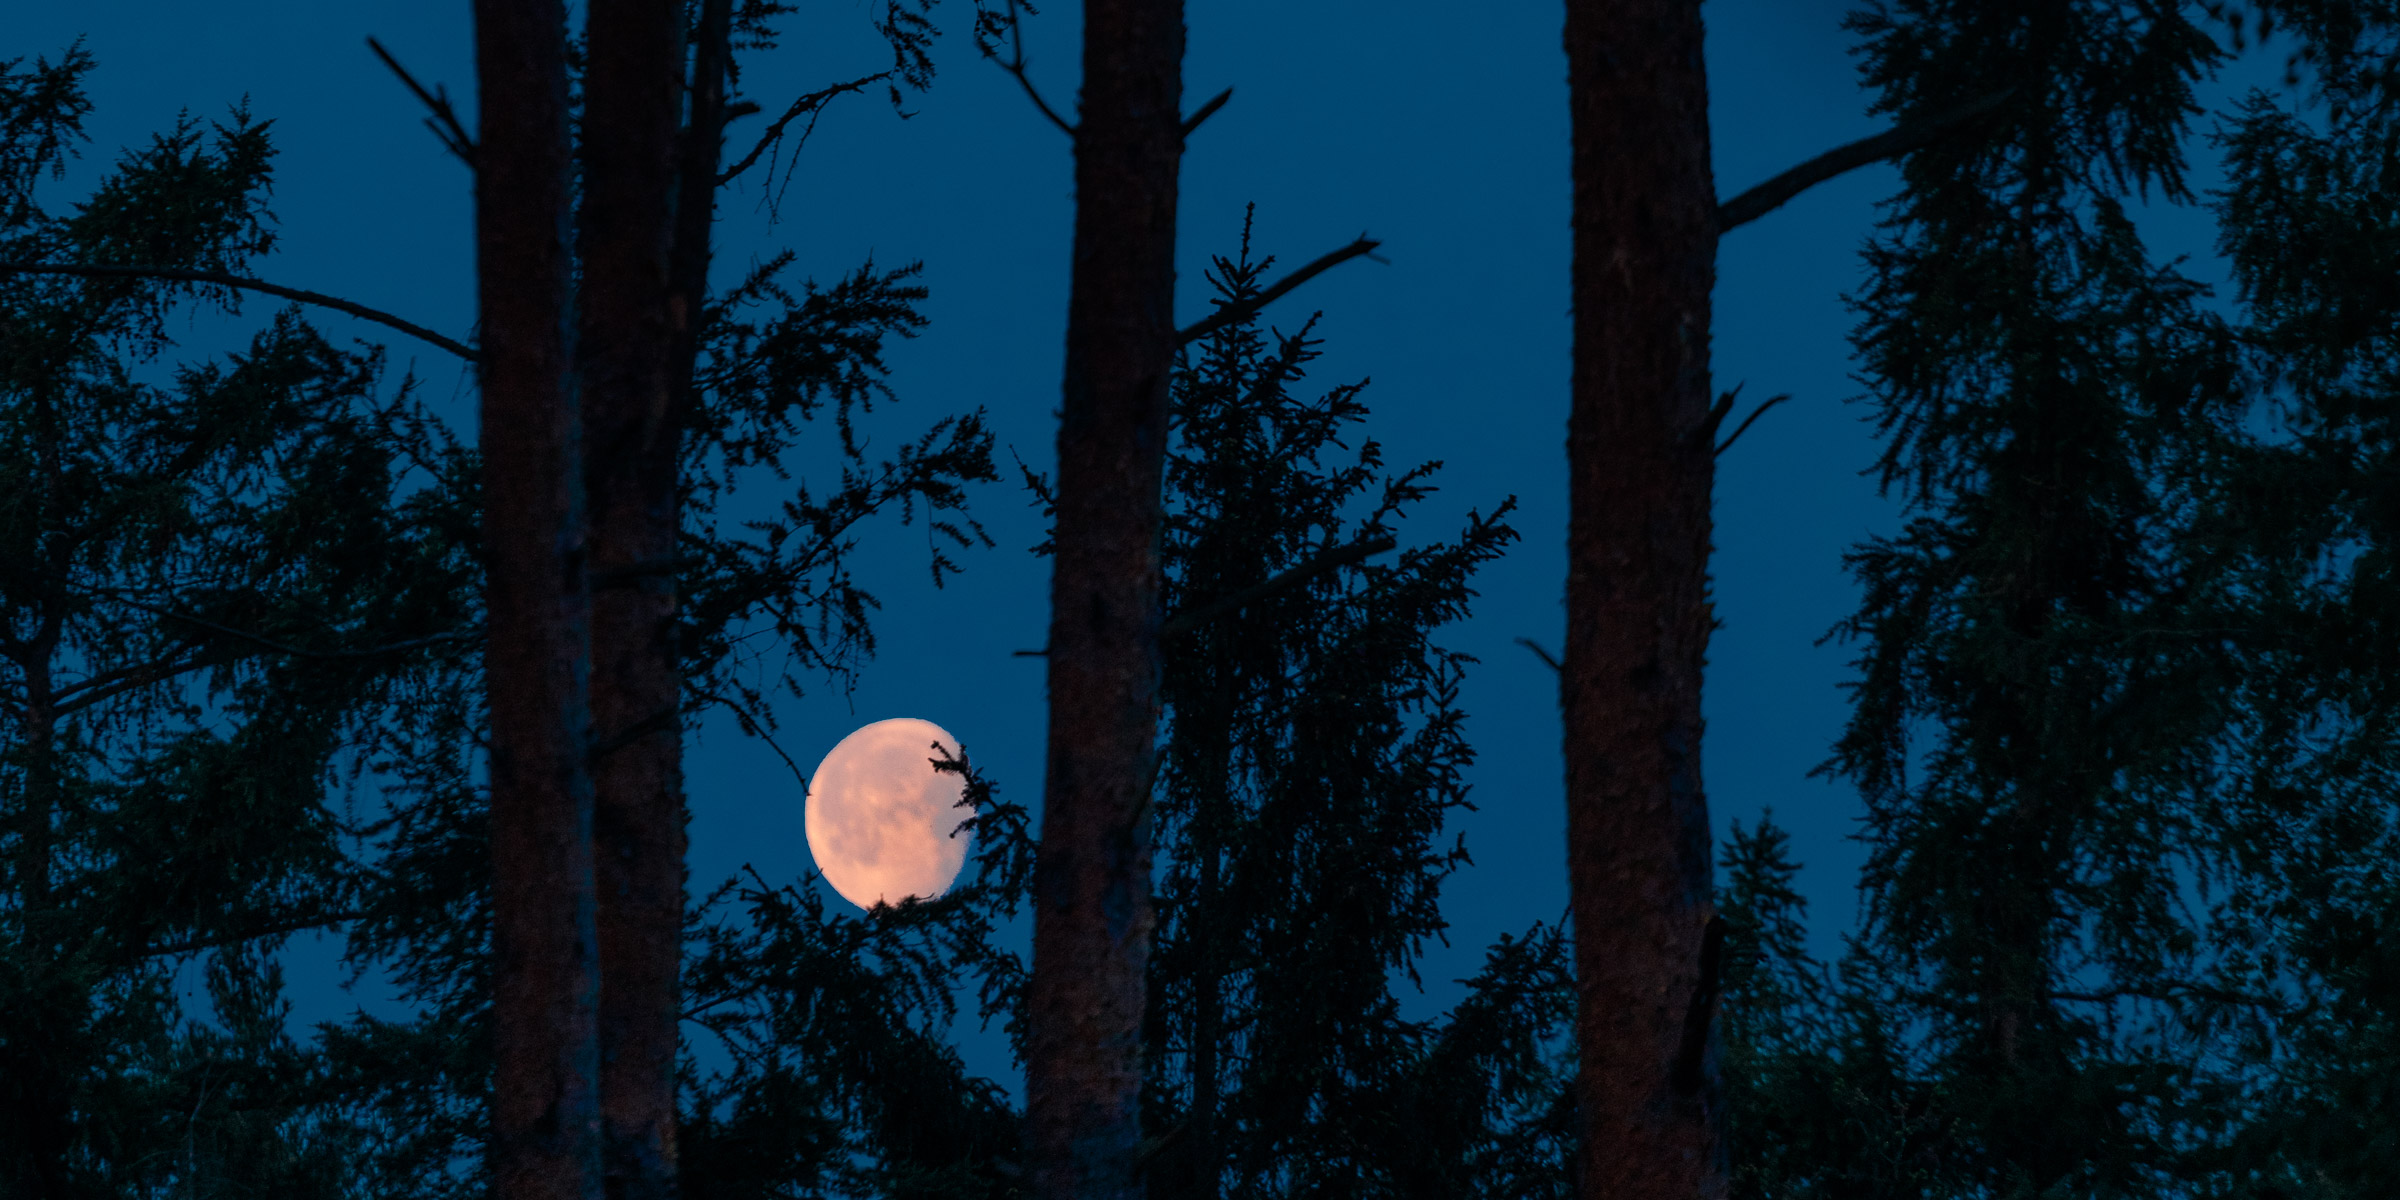 Moon set between trees